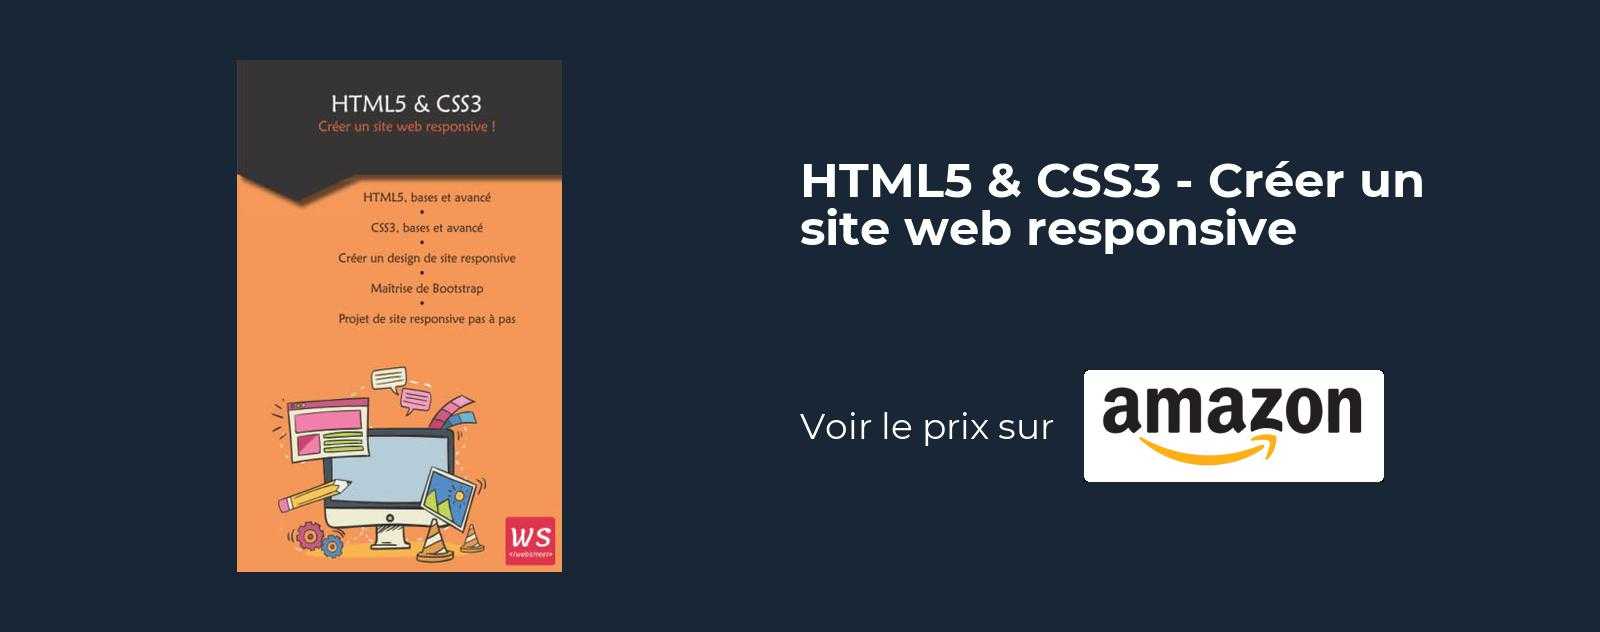 HTML5 & CSS3 - Créer un site web responsive